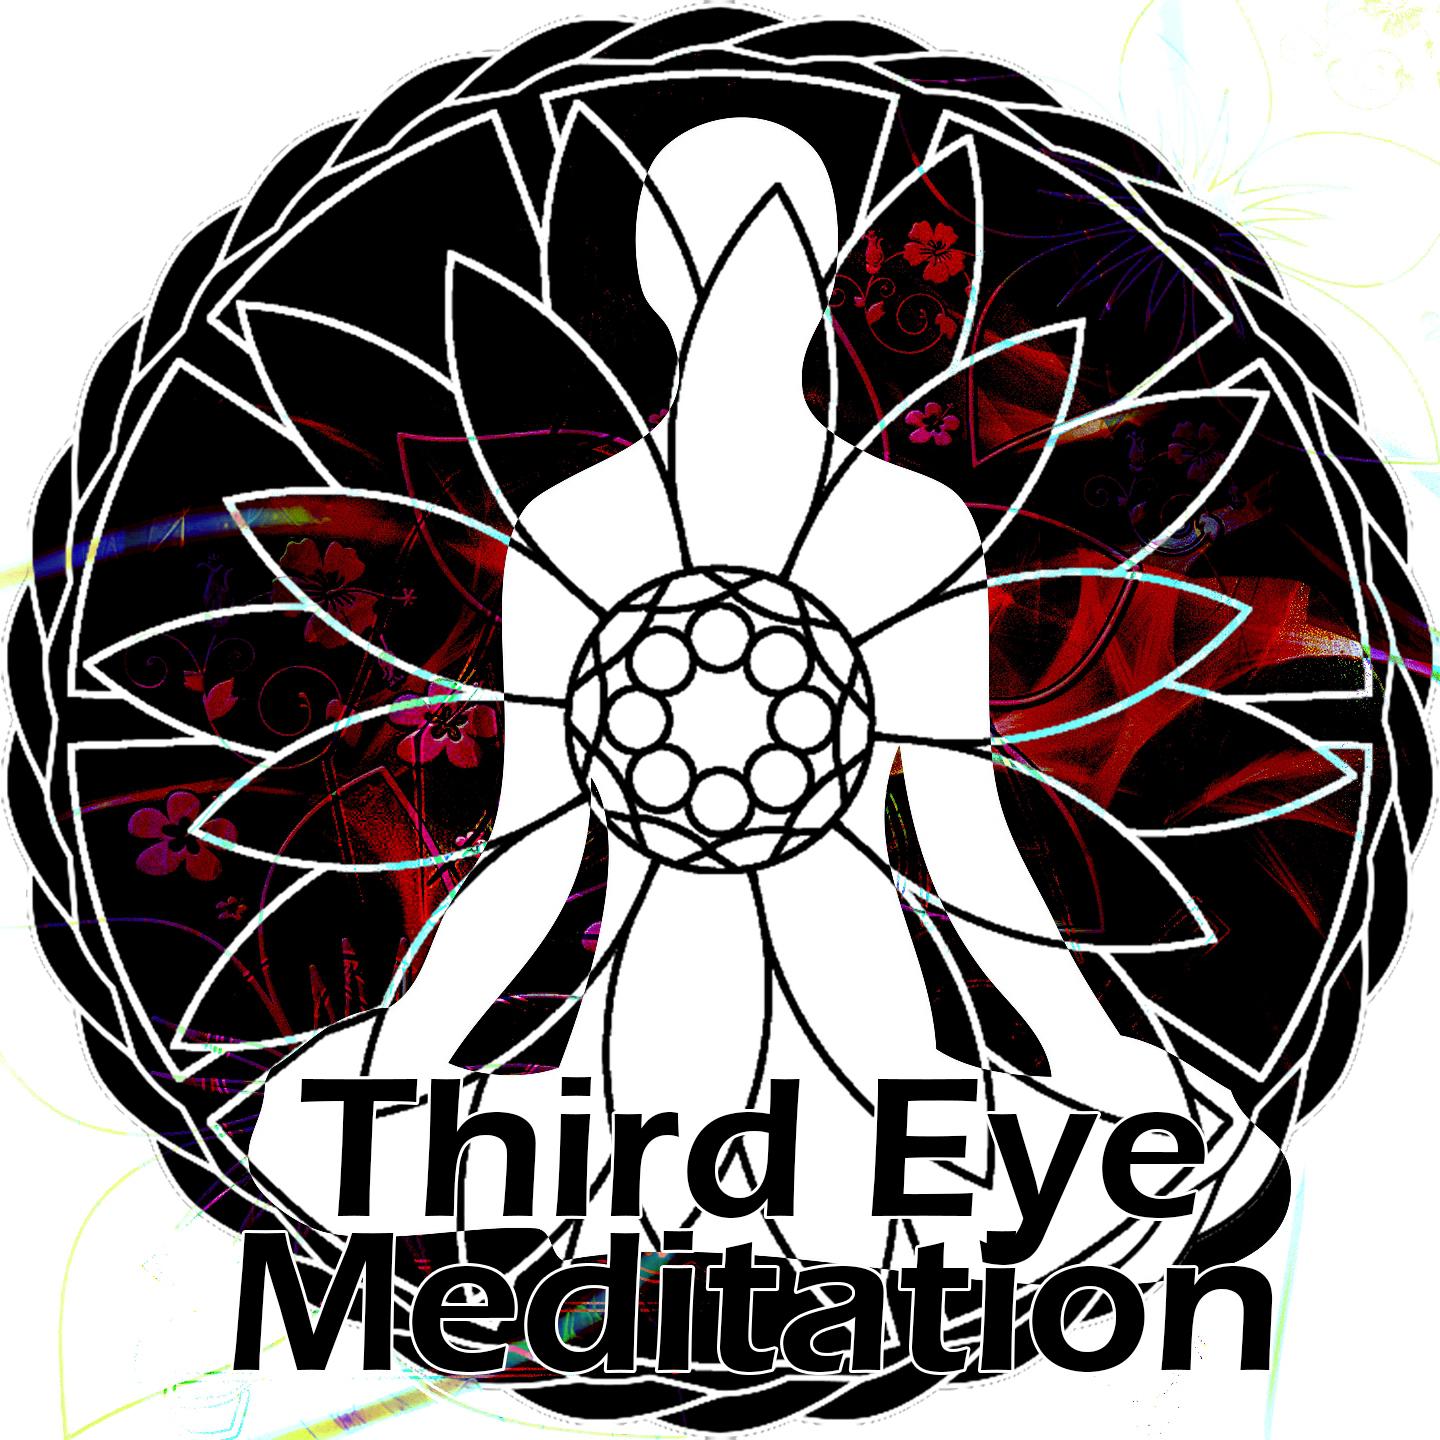 Third Eye Meditation